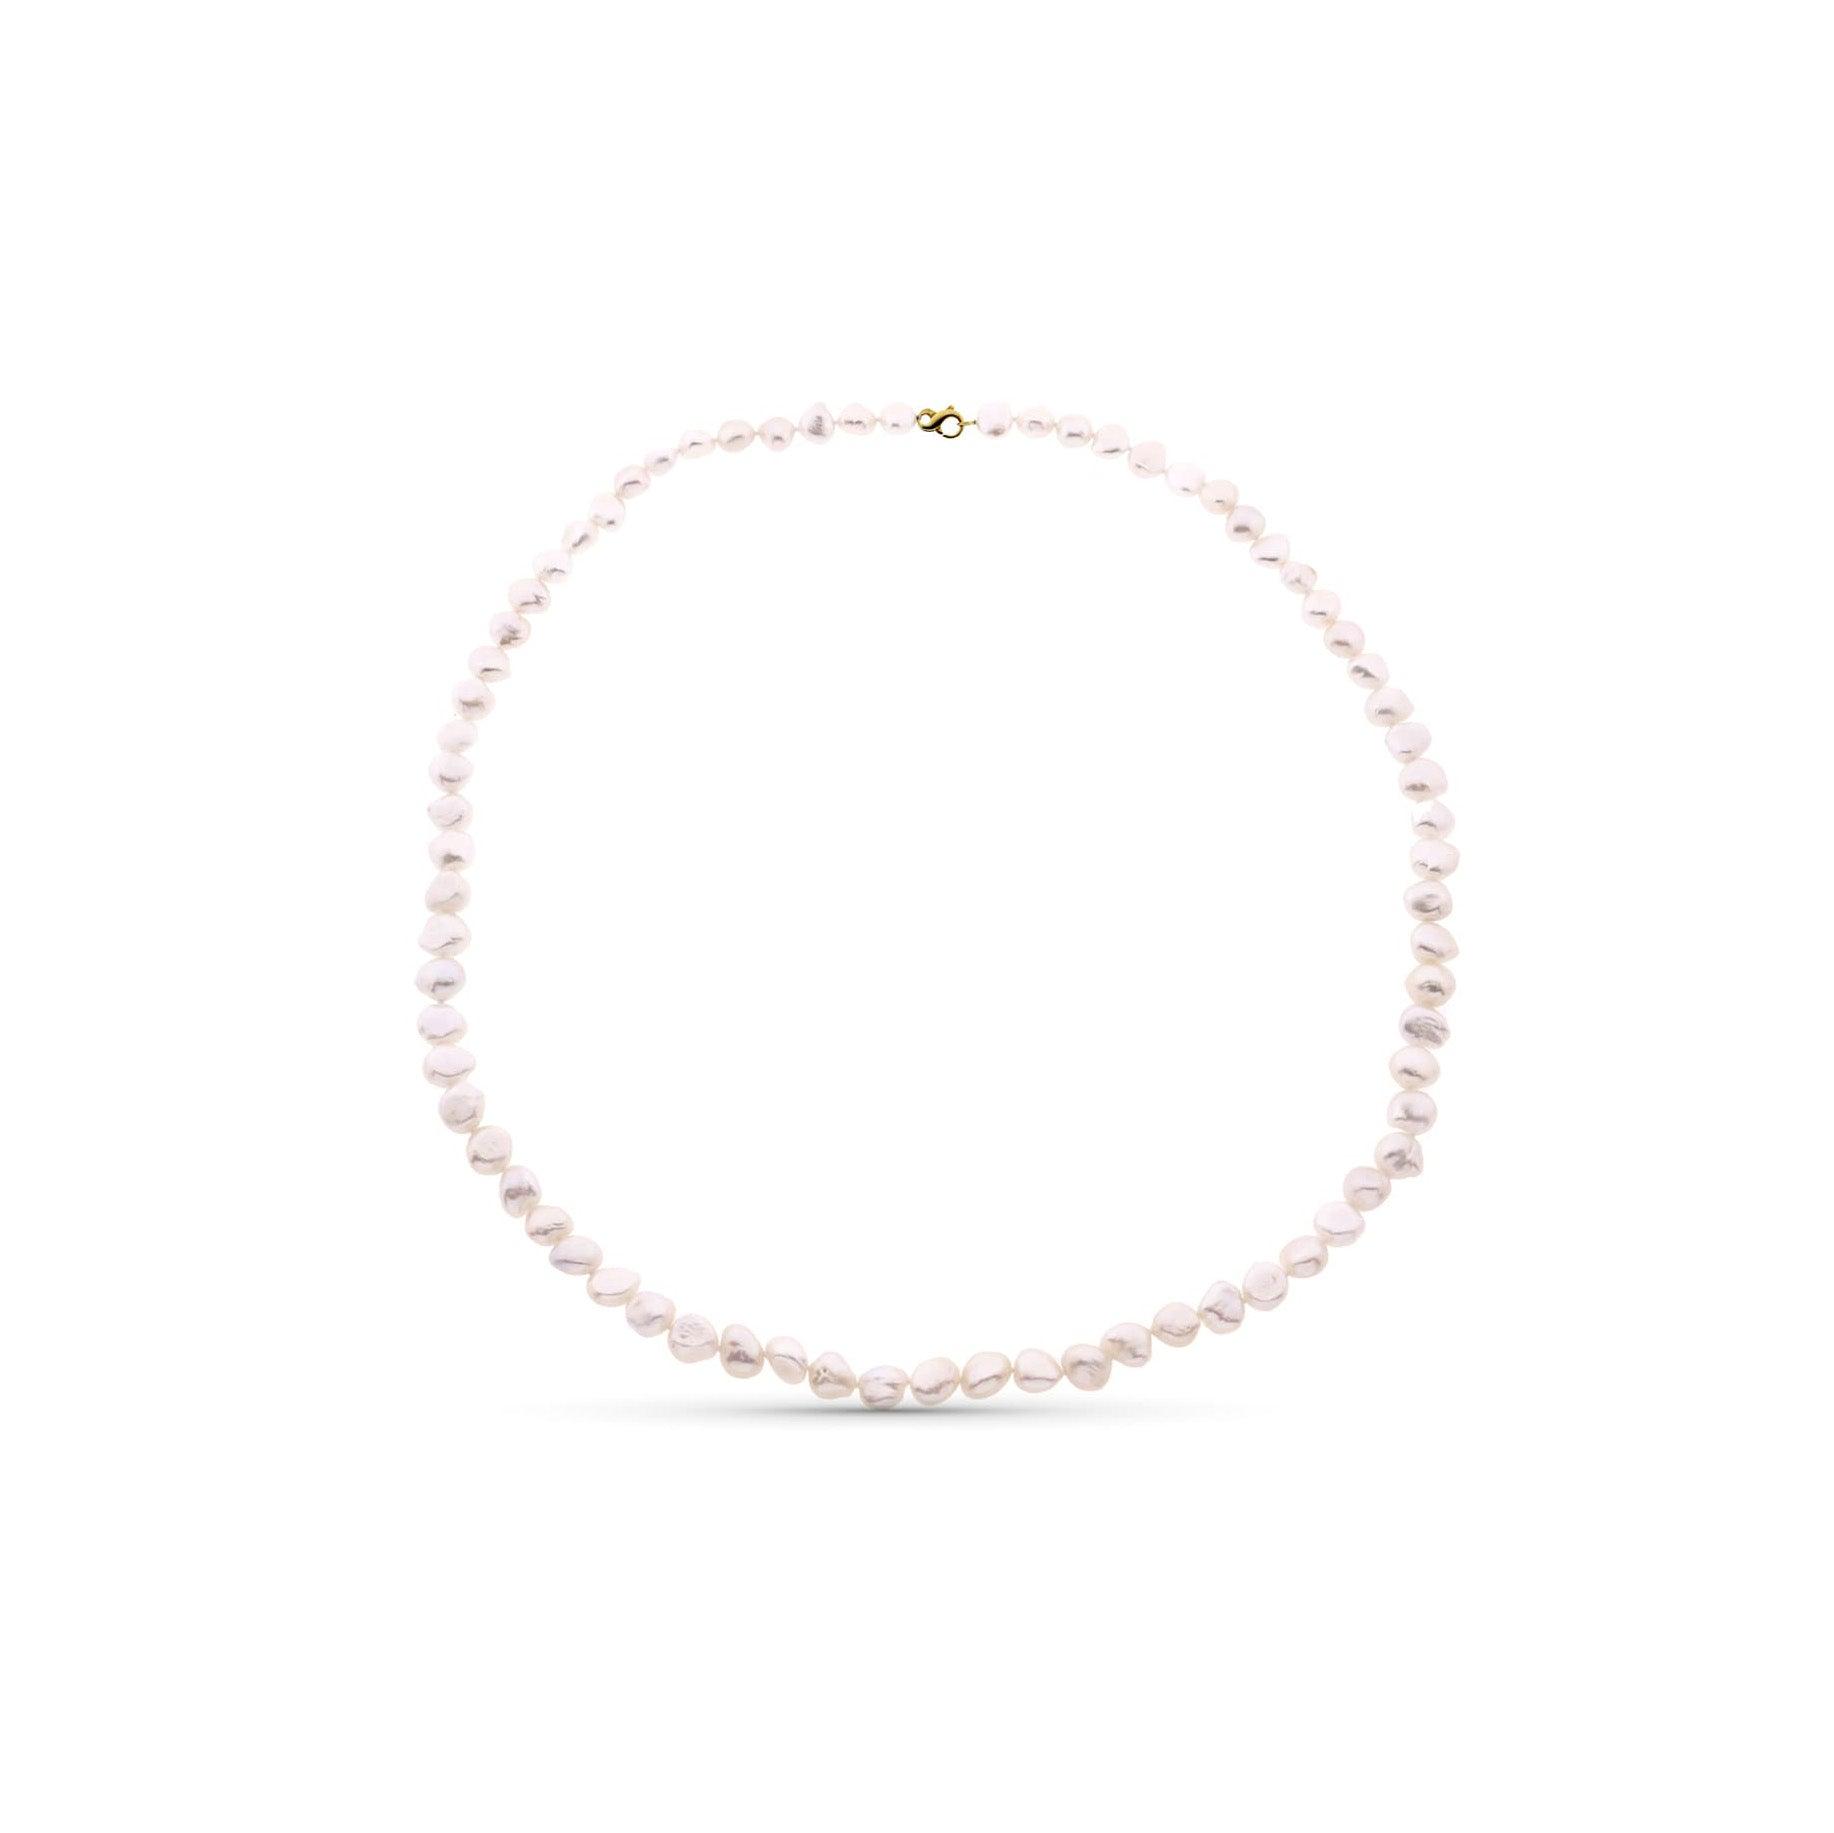 Collier "Délicatesse" en perles blanches rondes de culture et or jaune 18 carats - Maison Gabriel